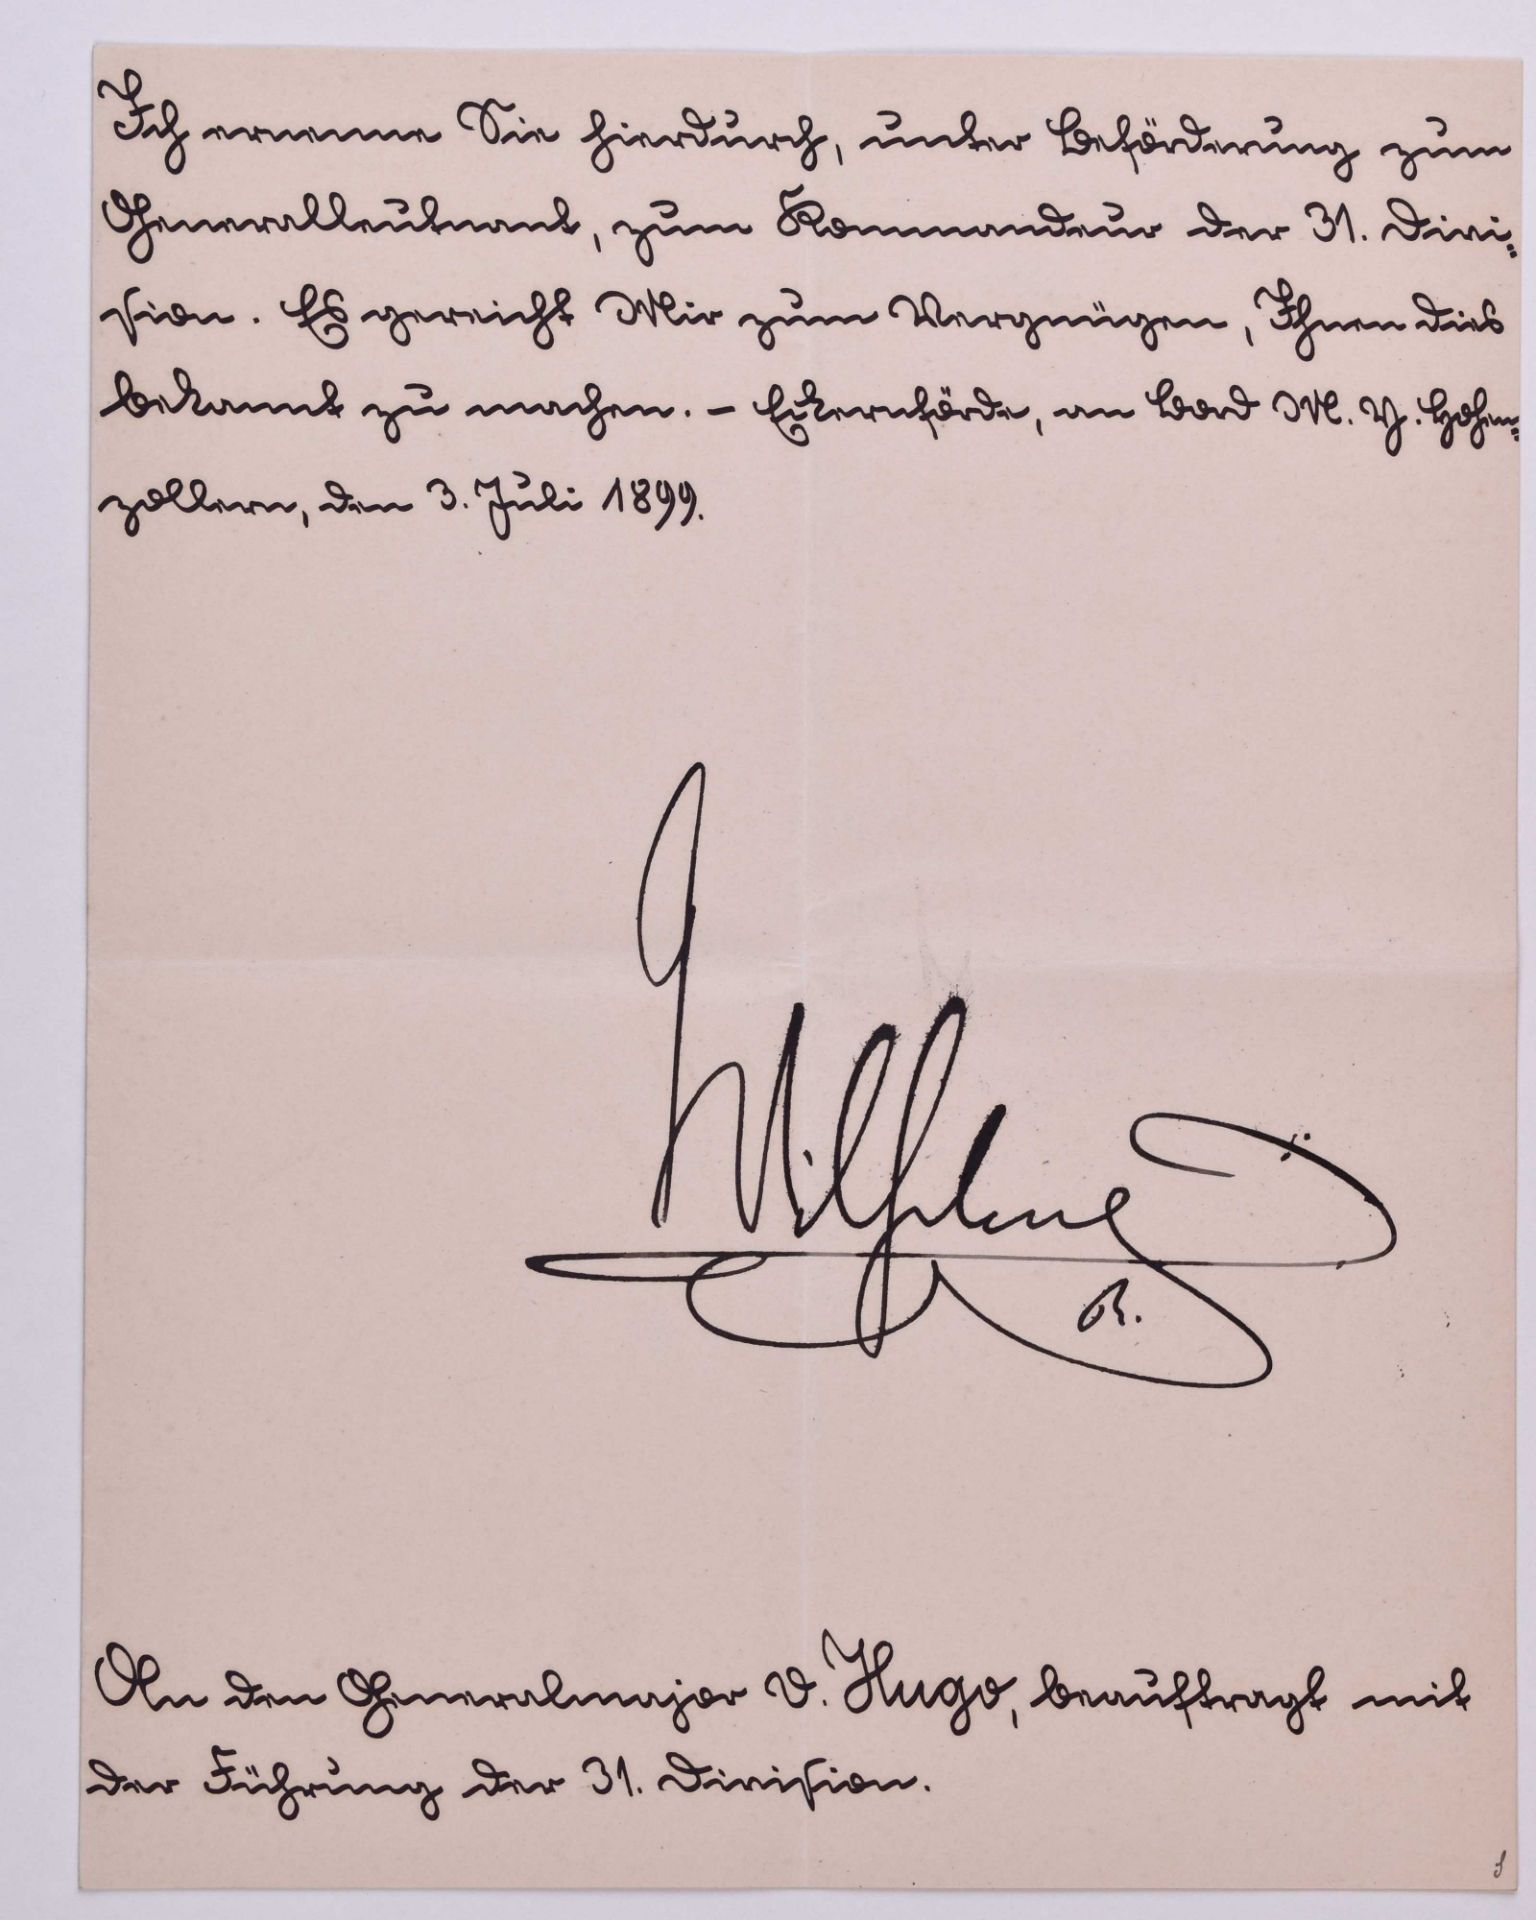 Ernennung zum Generalmajor vom 3.7.1899Mitteilung zur Ernennung zum Generalleutnant für Carl-Georg